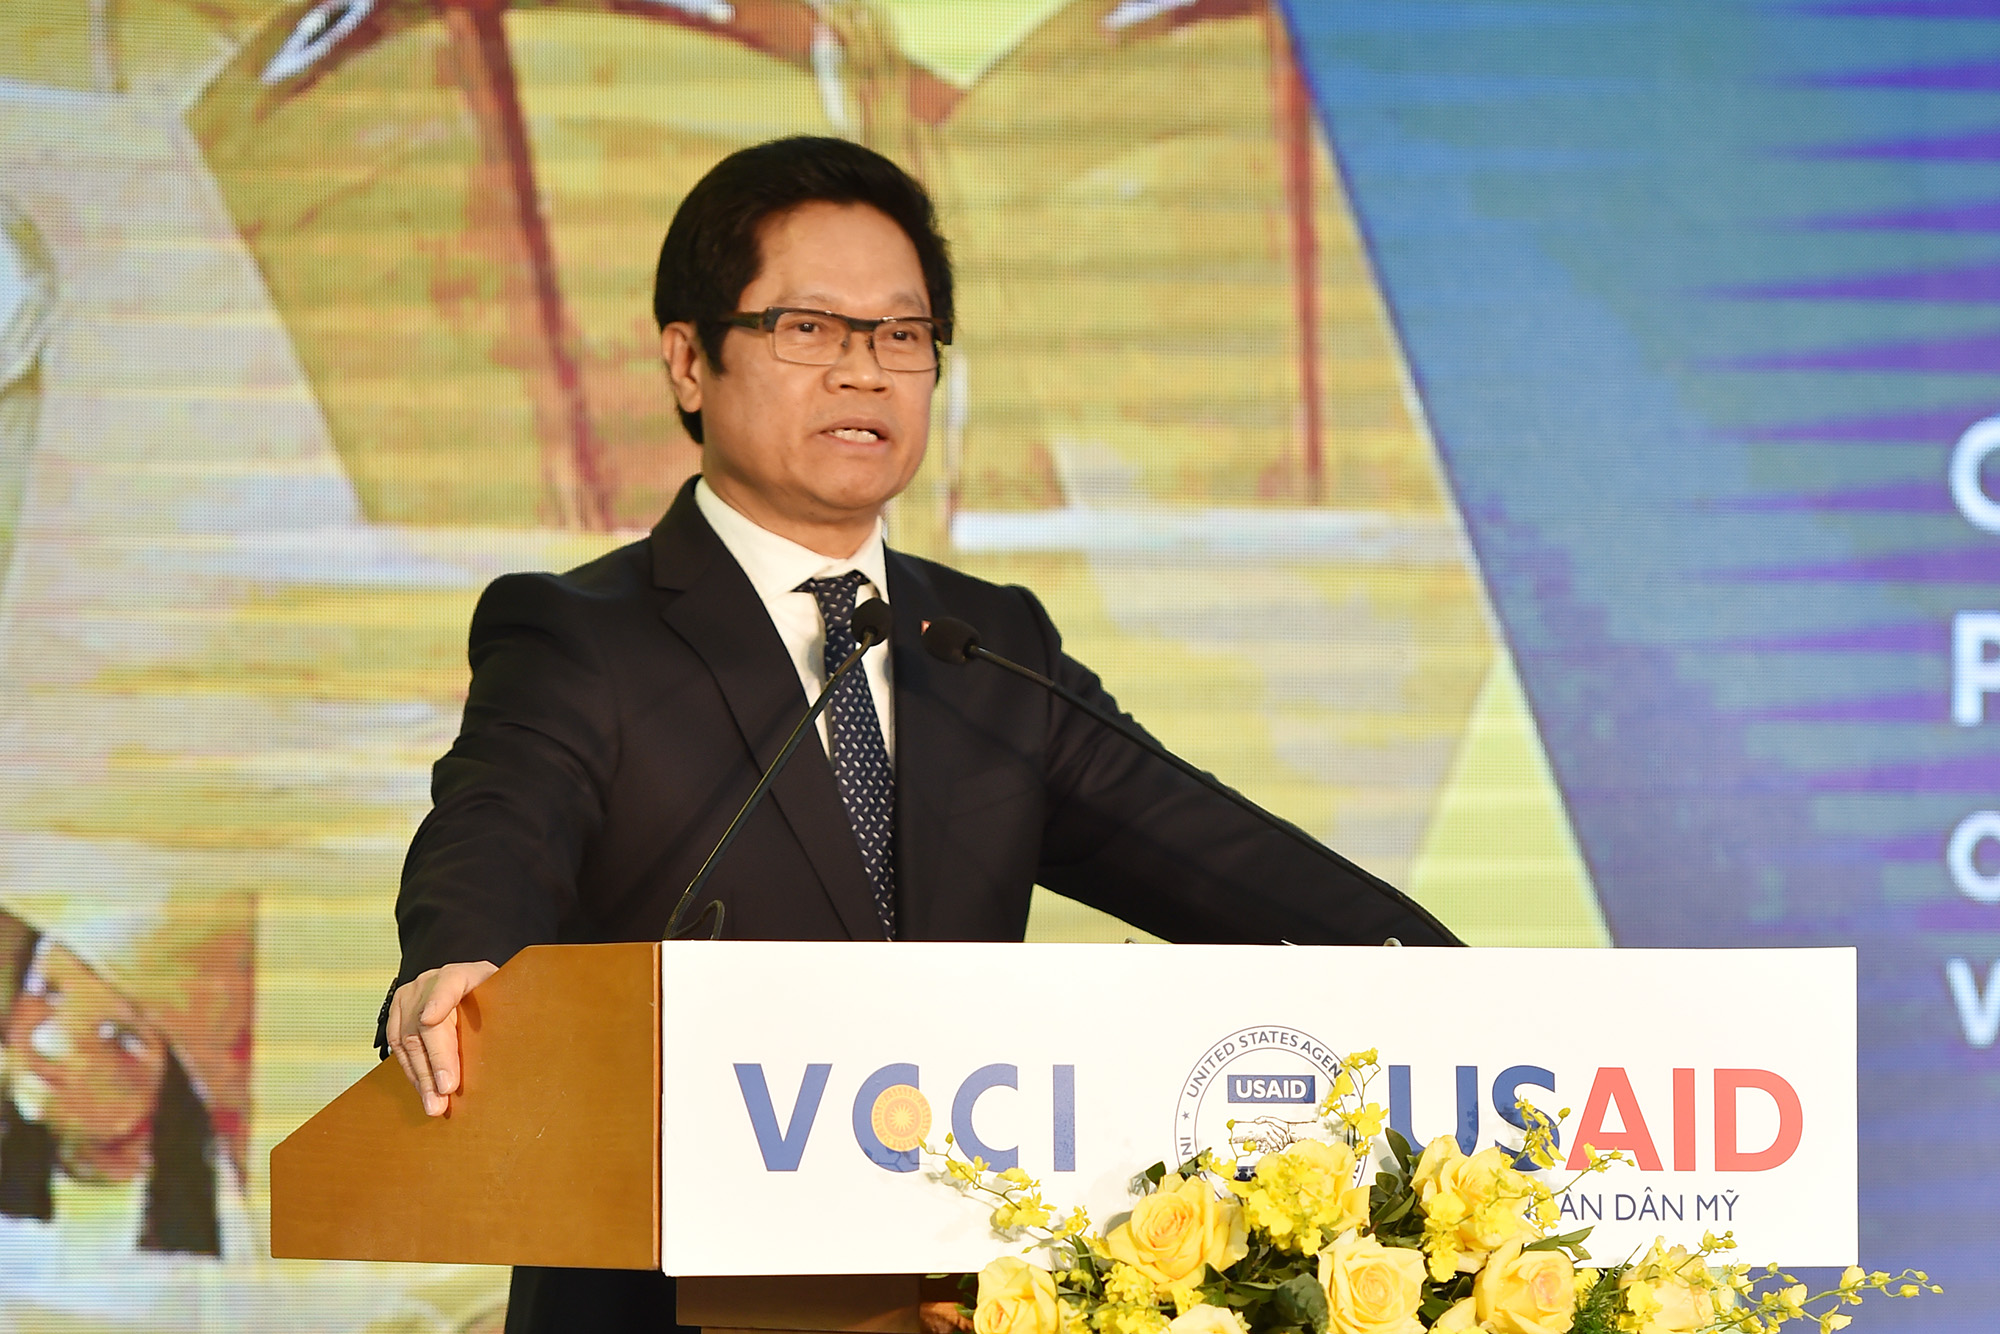 Đồng chí Vũ Tiến Lộc, Chủ tịch VCCI phát biểu tại buổi lễ.